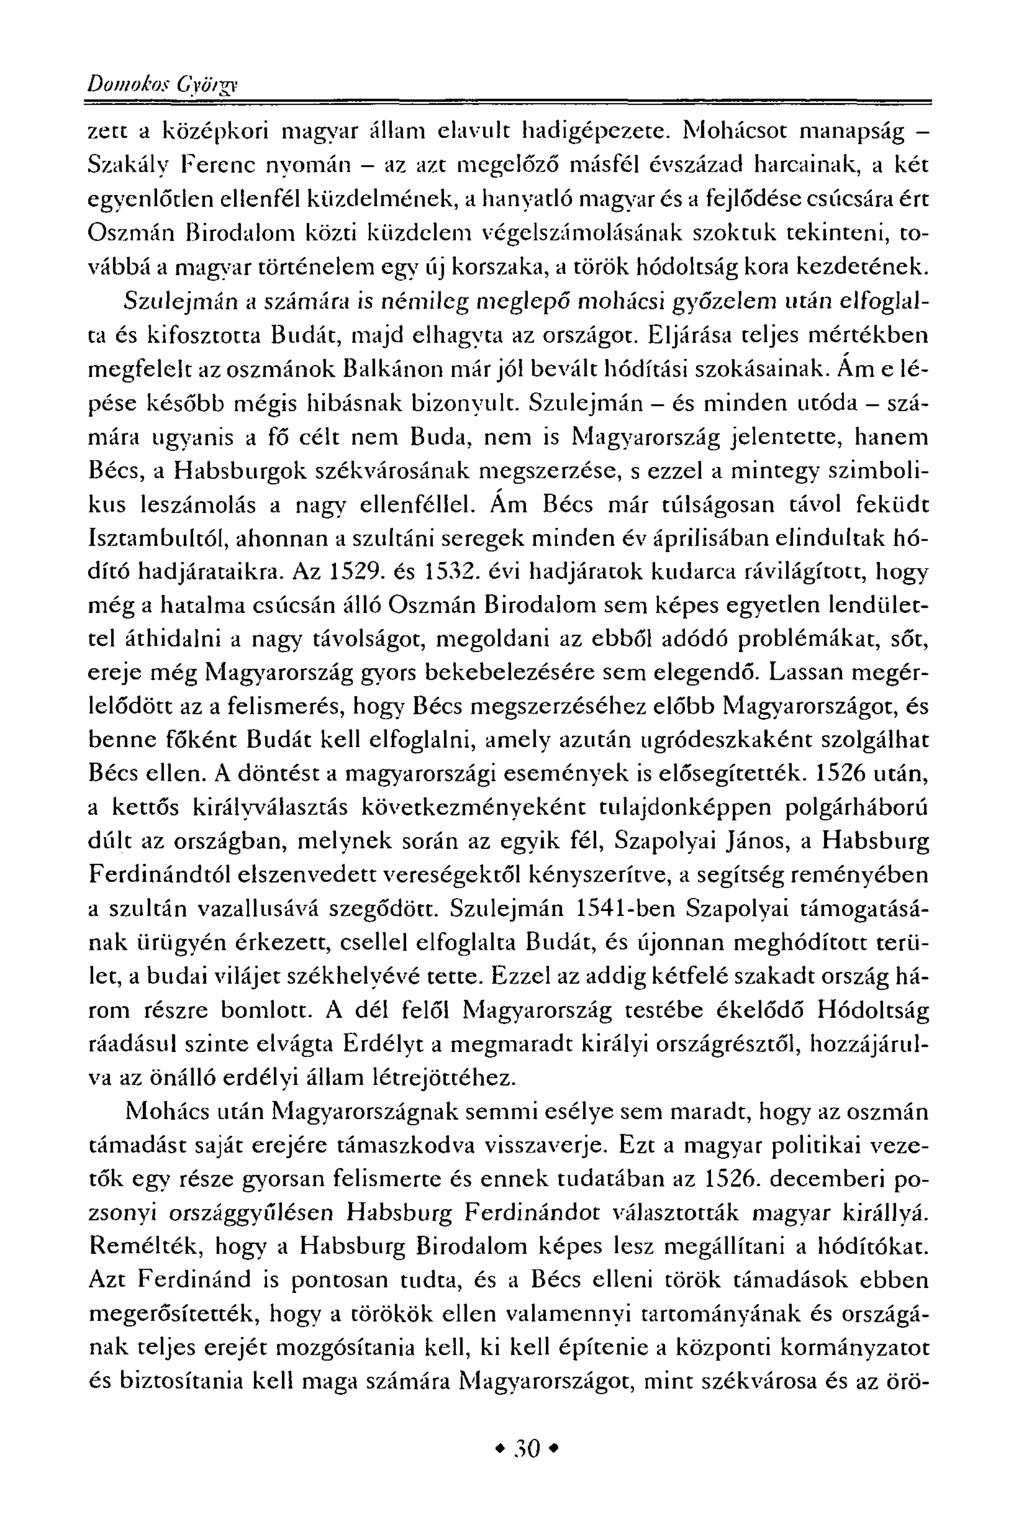 Domokos G'yó'/gv zett a középkori magyar állam elavult had gépezete.